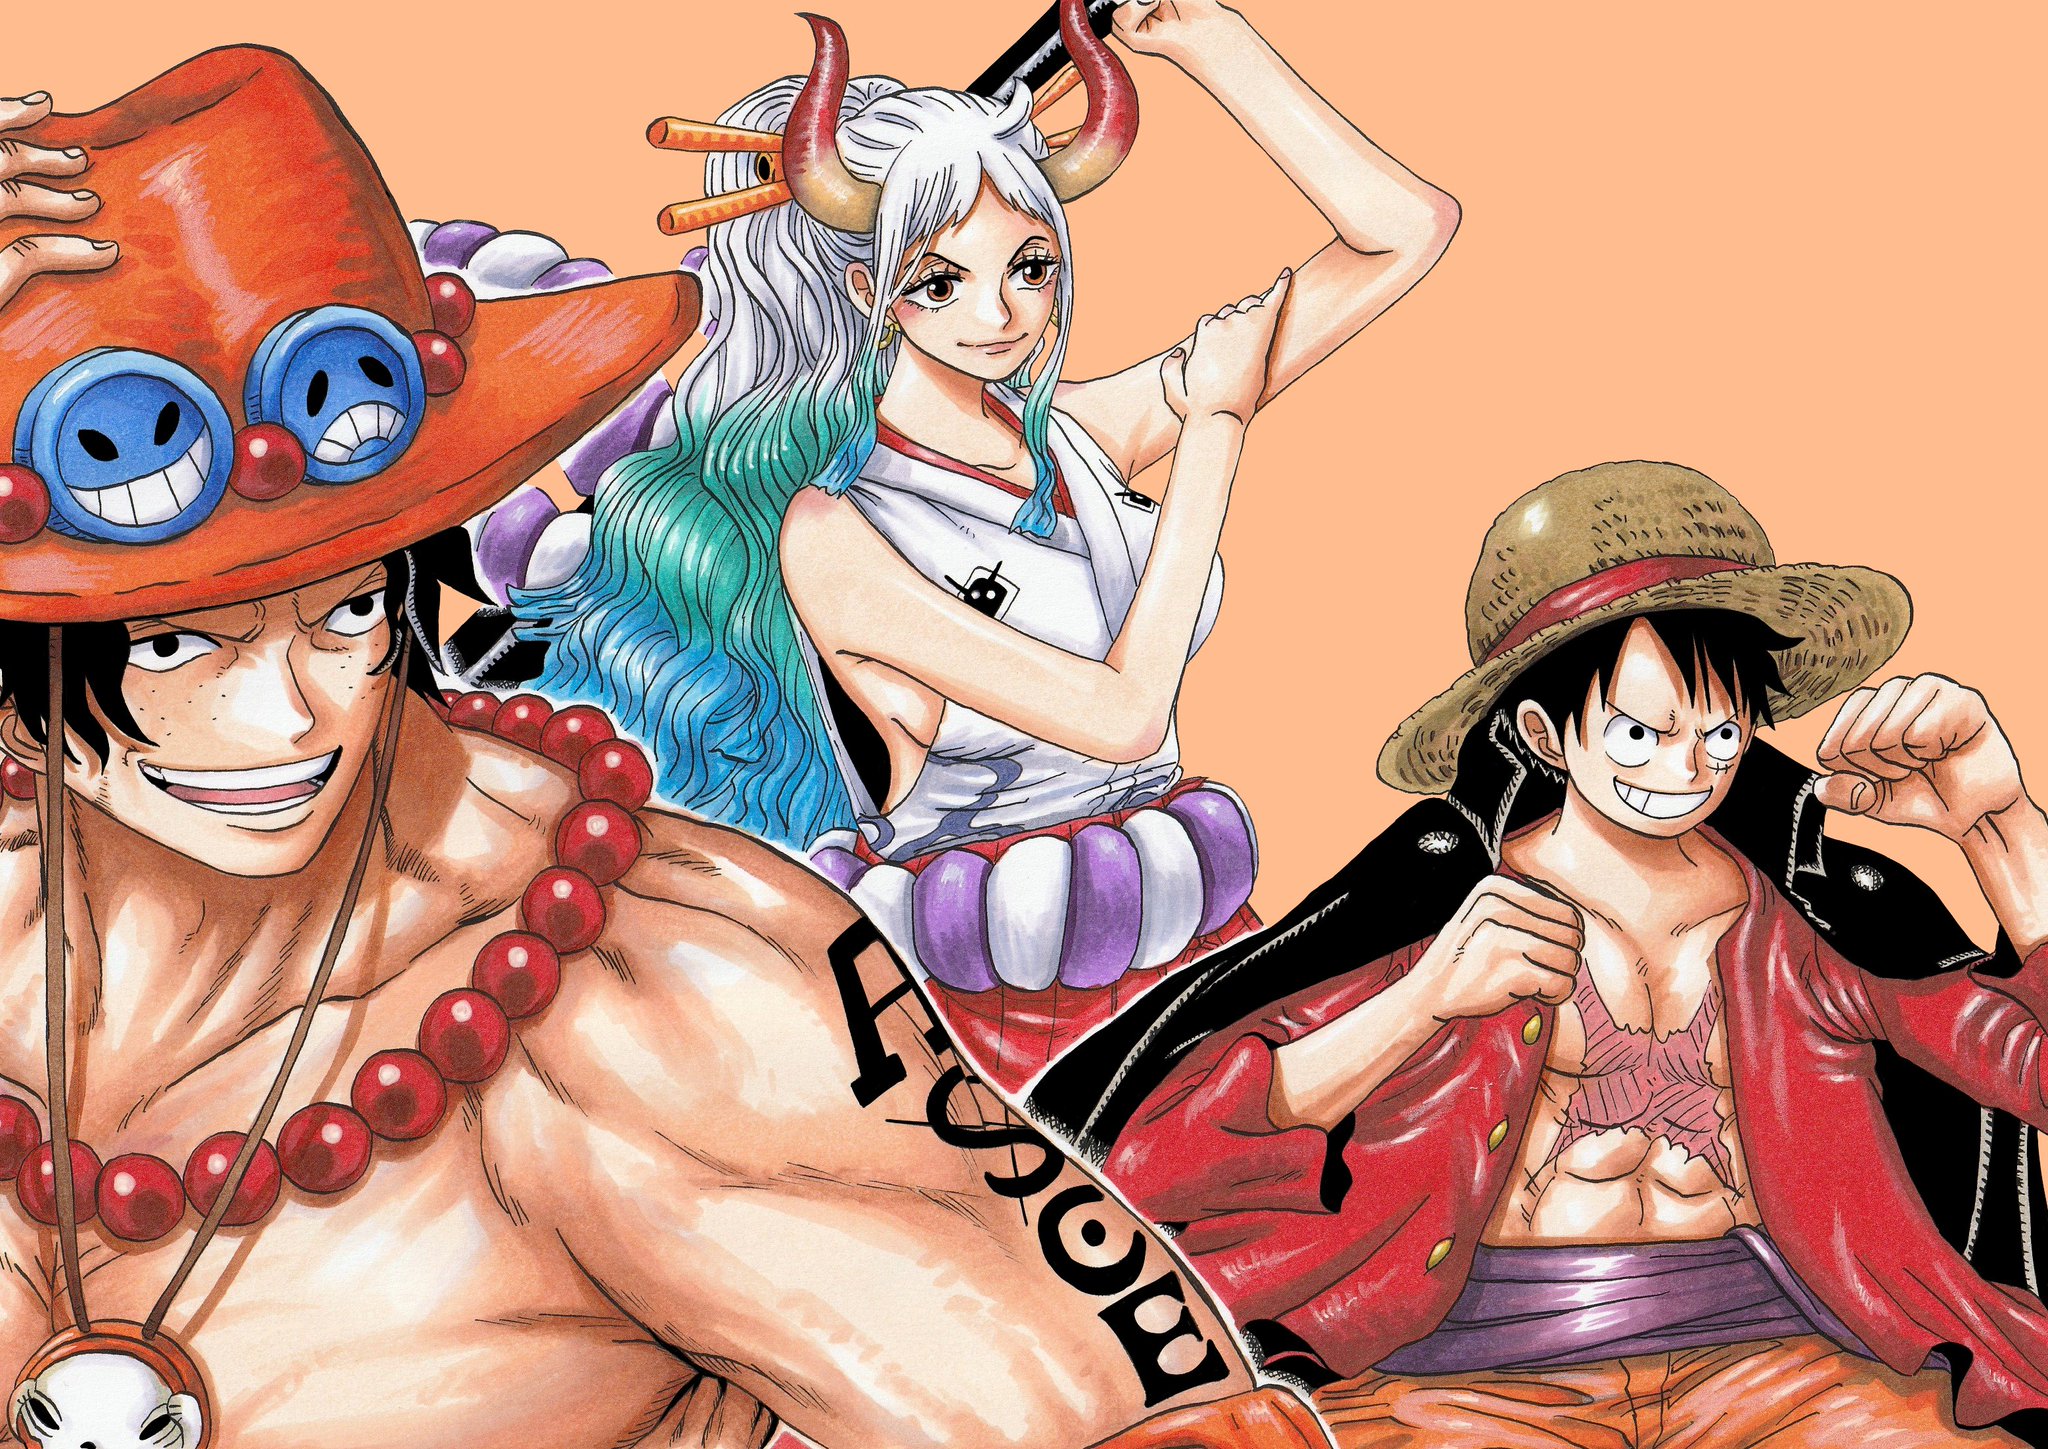 Hình nền One Piece chất lượng cao luôn mang đến cho bạn trải nghiệm hình ảnh tuyệt vời nhất. Cùng tận hưởng độ nét cao và sắc màu sinh động với bộ hình nền One Piece HD này.